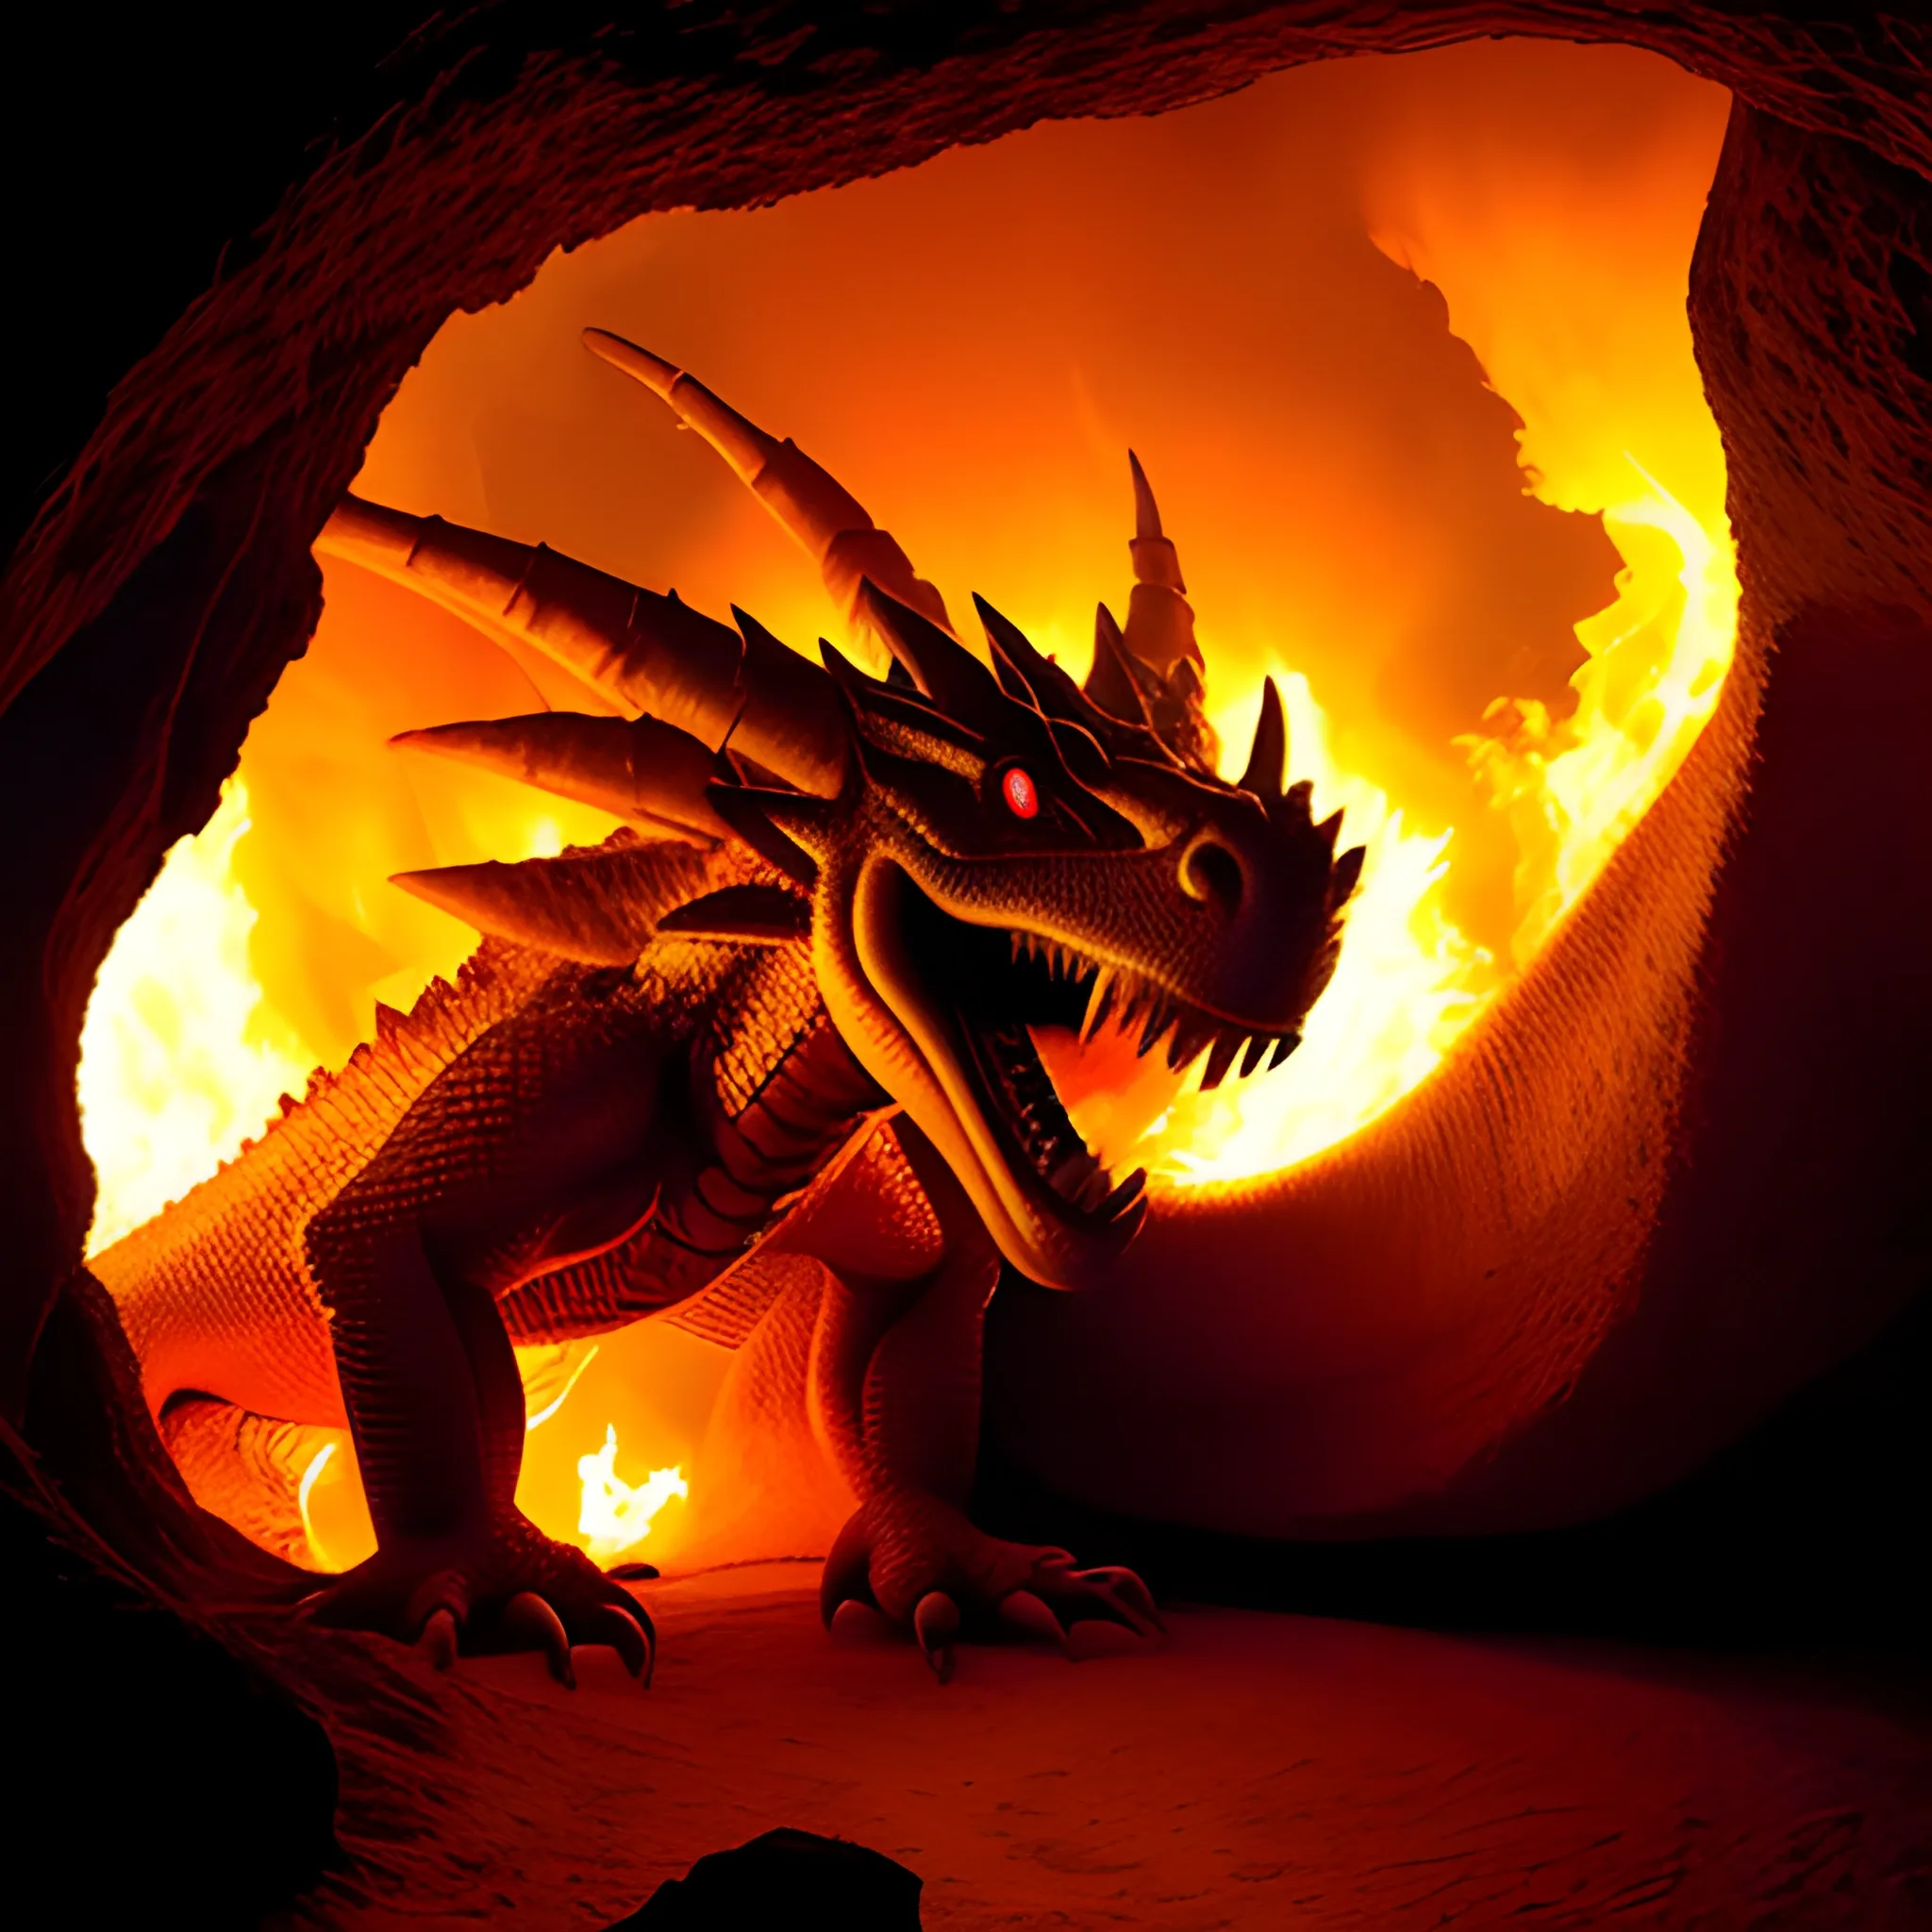 Dragón expulsando fuego, calidad fotográfica, cueva gigante 